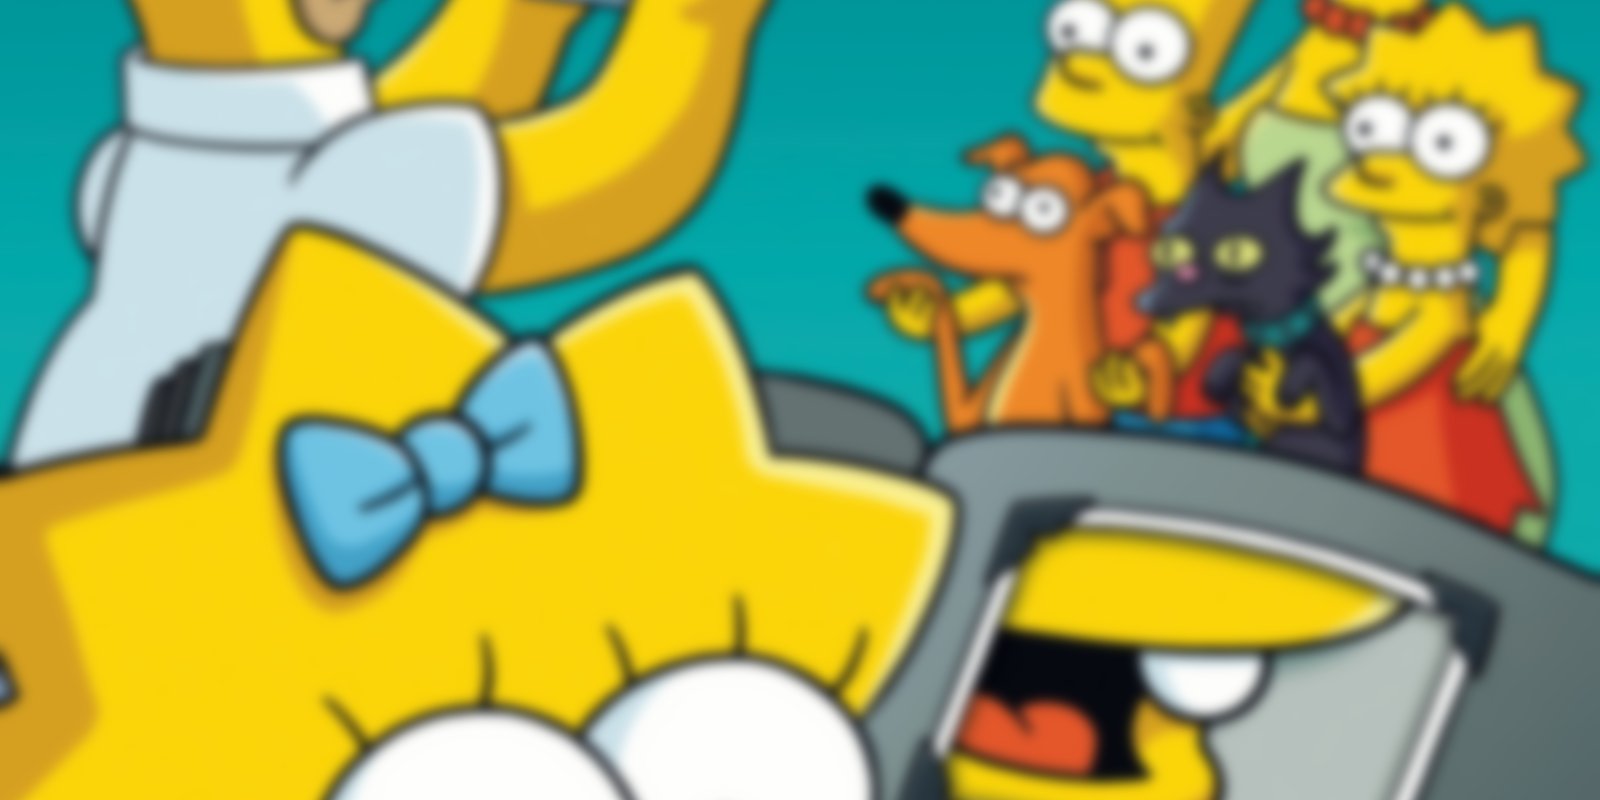 Die Simpsons - Staffel 8